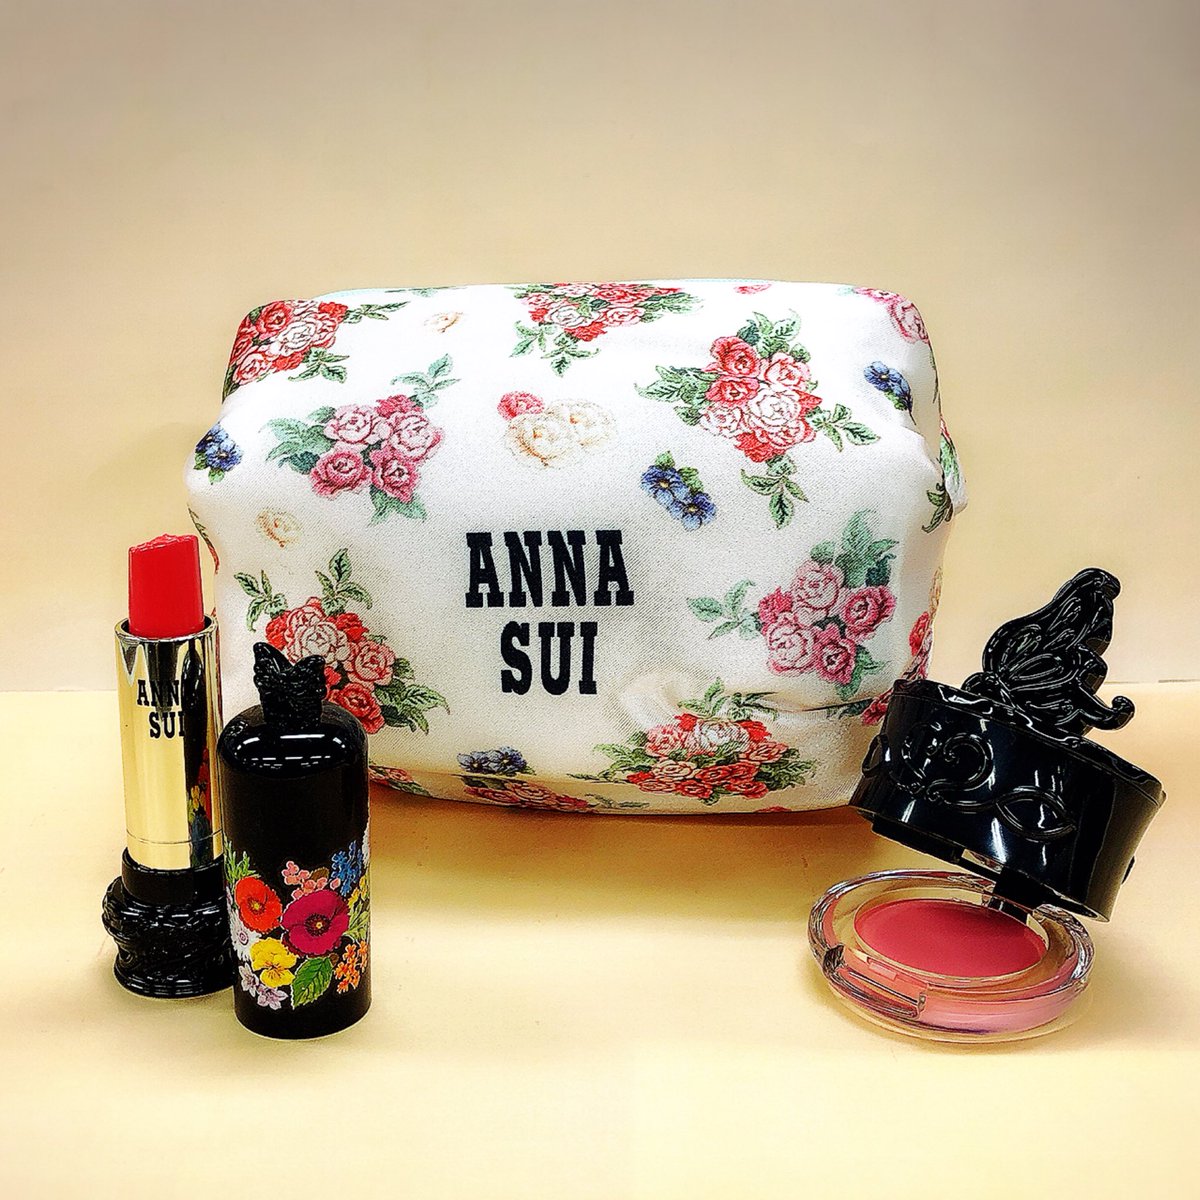 Anna Sui Cosmetics בטוויטר アナスイコスメティックス の商品の中から5 000円 税抜 以上お買い上げのお客様に オリジナル ローズ コスメポーチ をおひとつ プレゼント 無くなり次第終了とさせていただきます Annasui ノベルティ プレゼント ポーチ